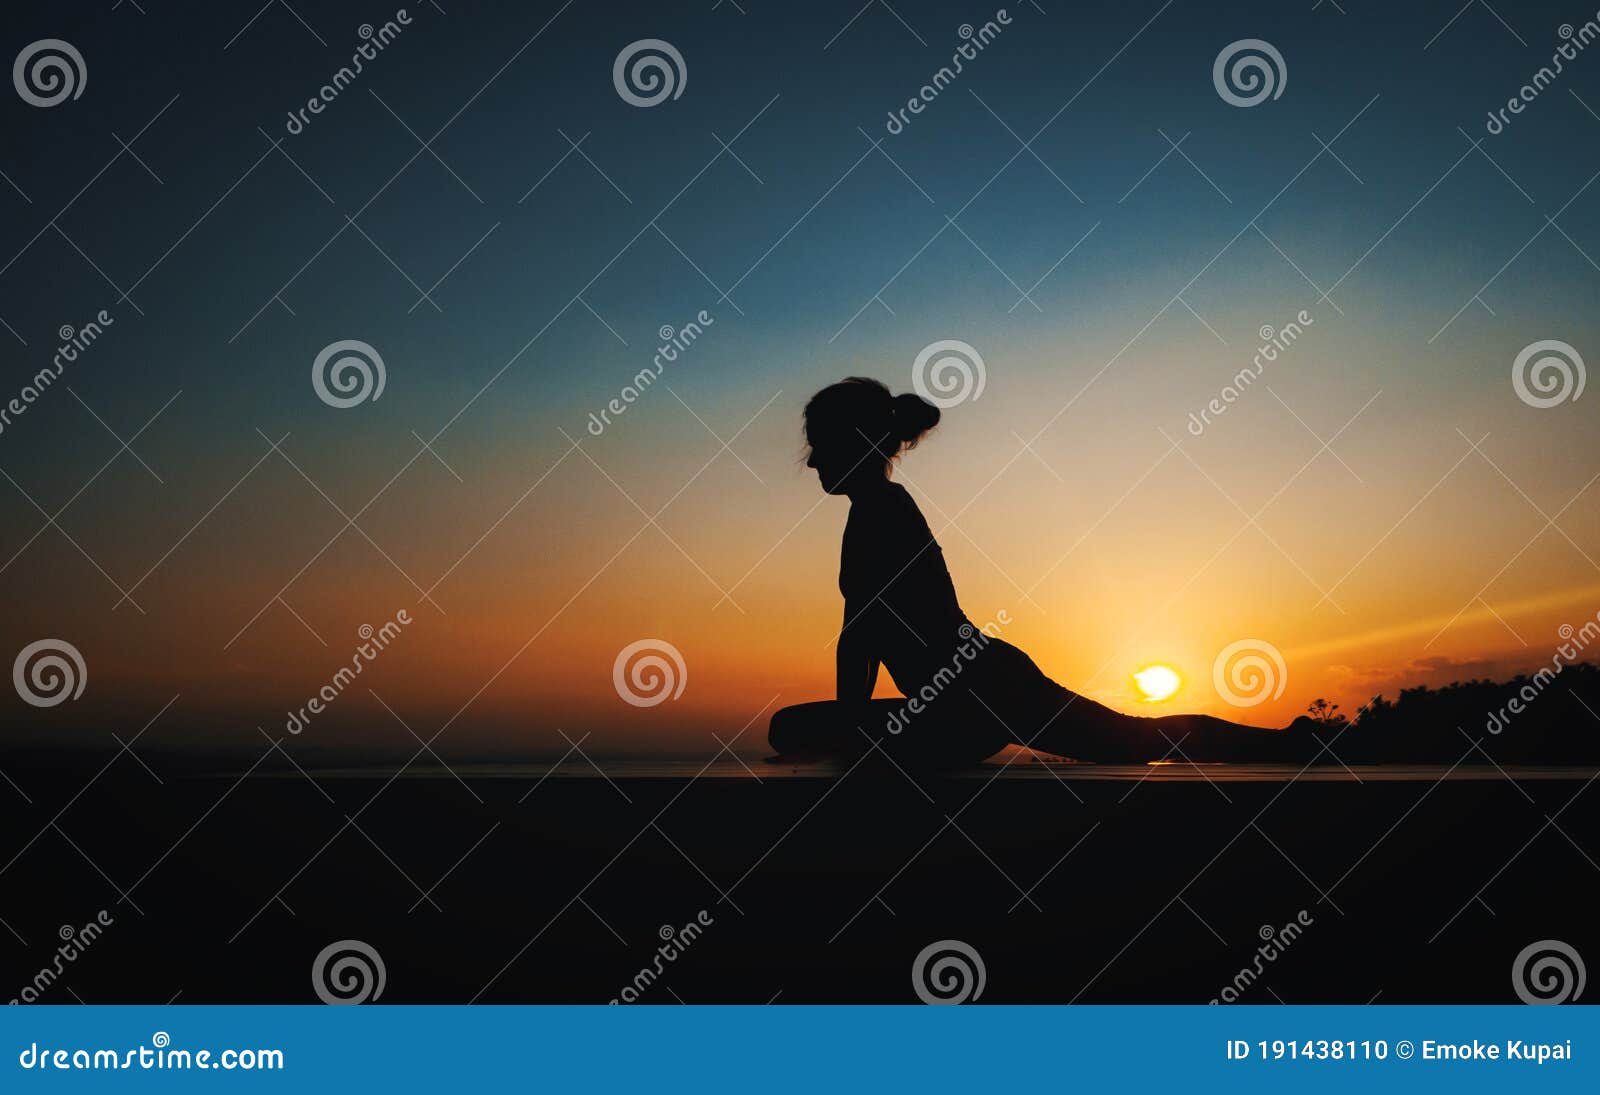 yoga sunset calmness